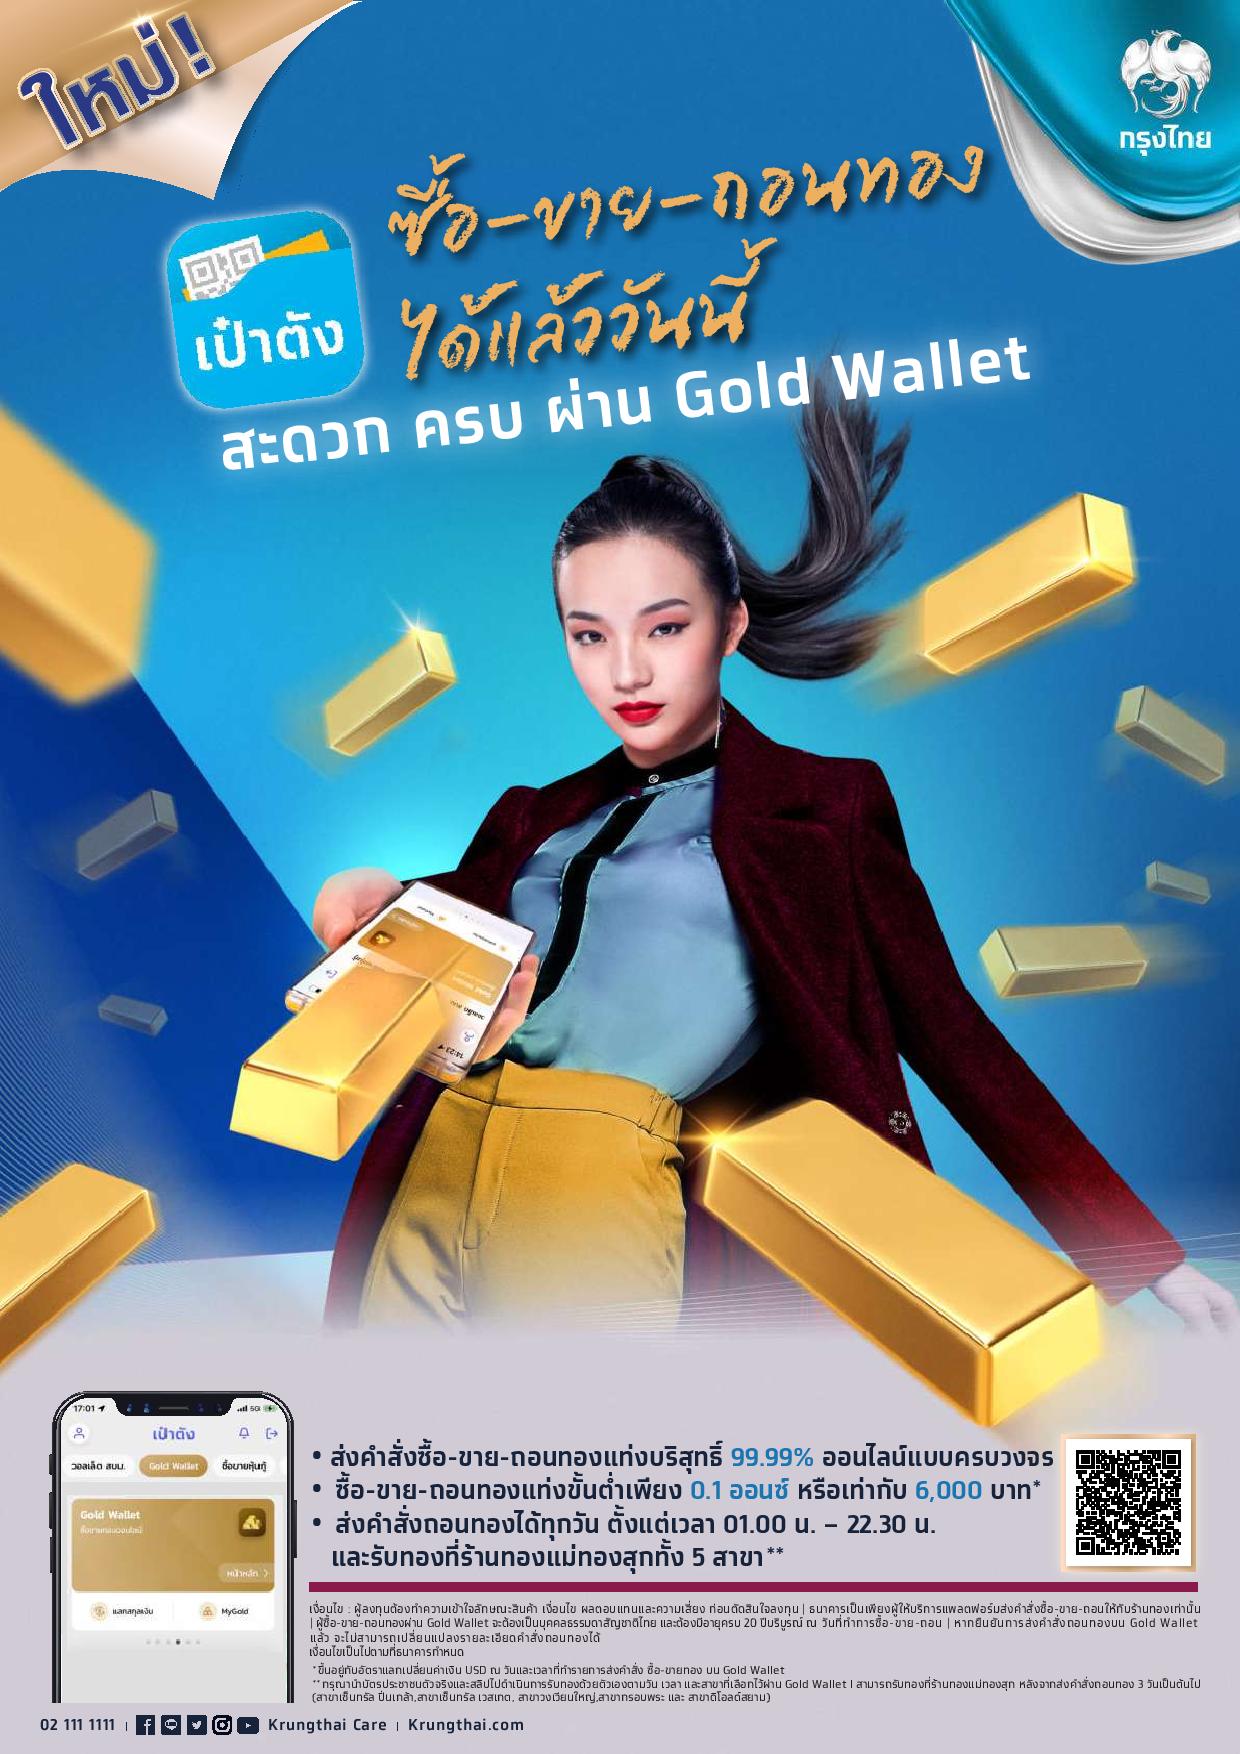 กรุงไทย - เป๋าตัง ซื้อ-ขาย-ถอนทอง ได้แล้วววันนี้ สะดวก ครบ ผ่าน Gold Wallet